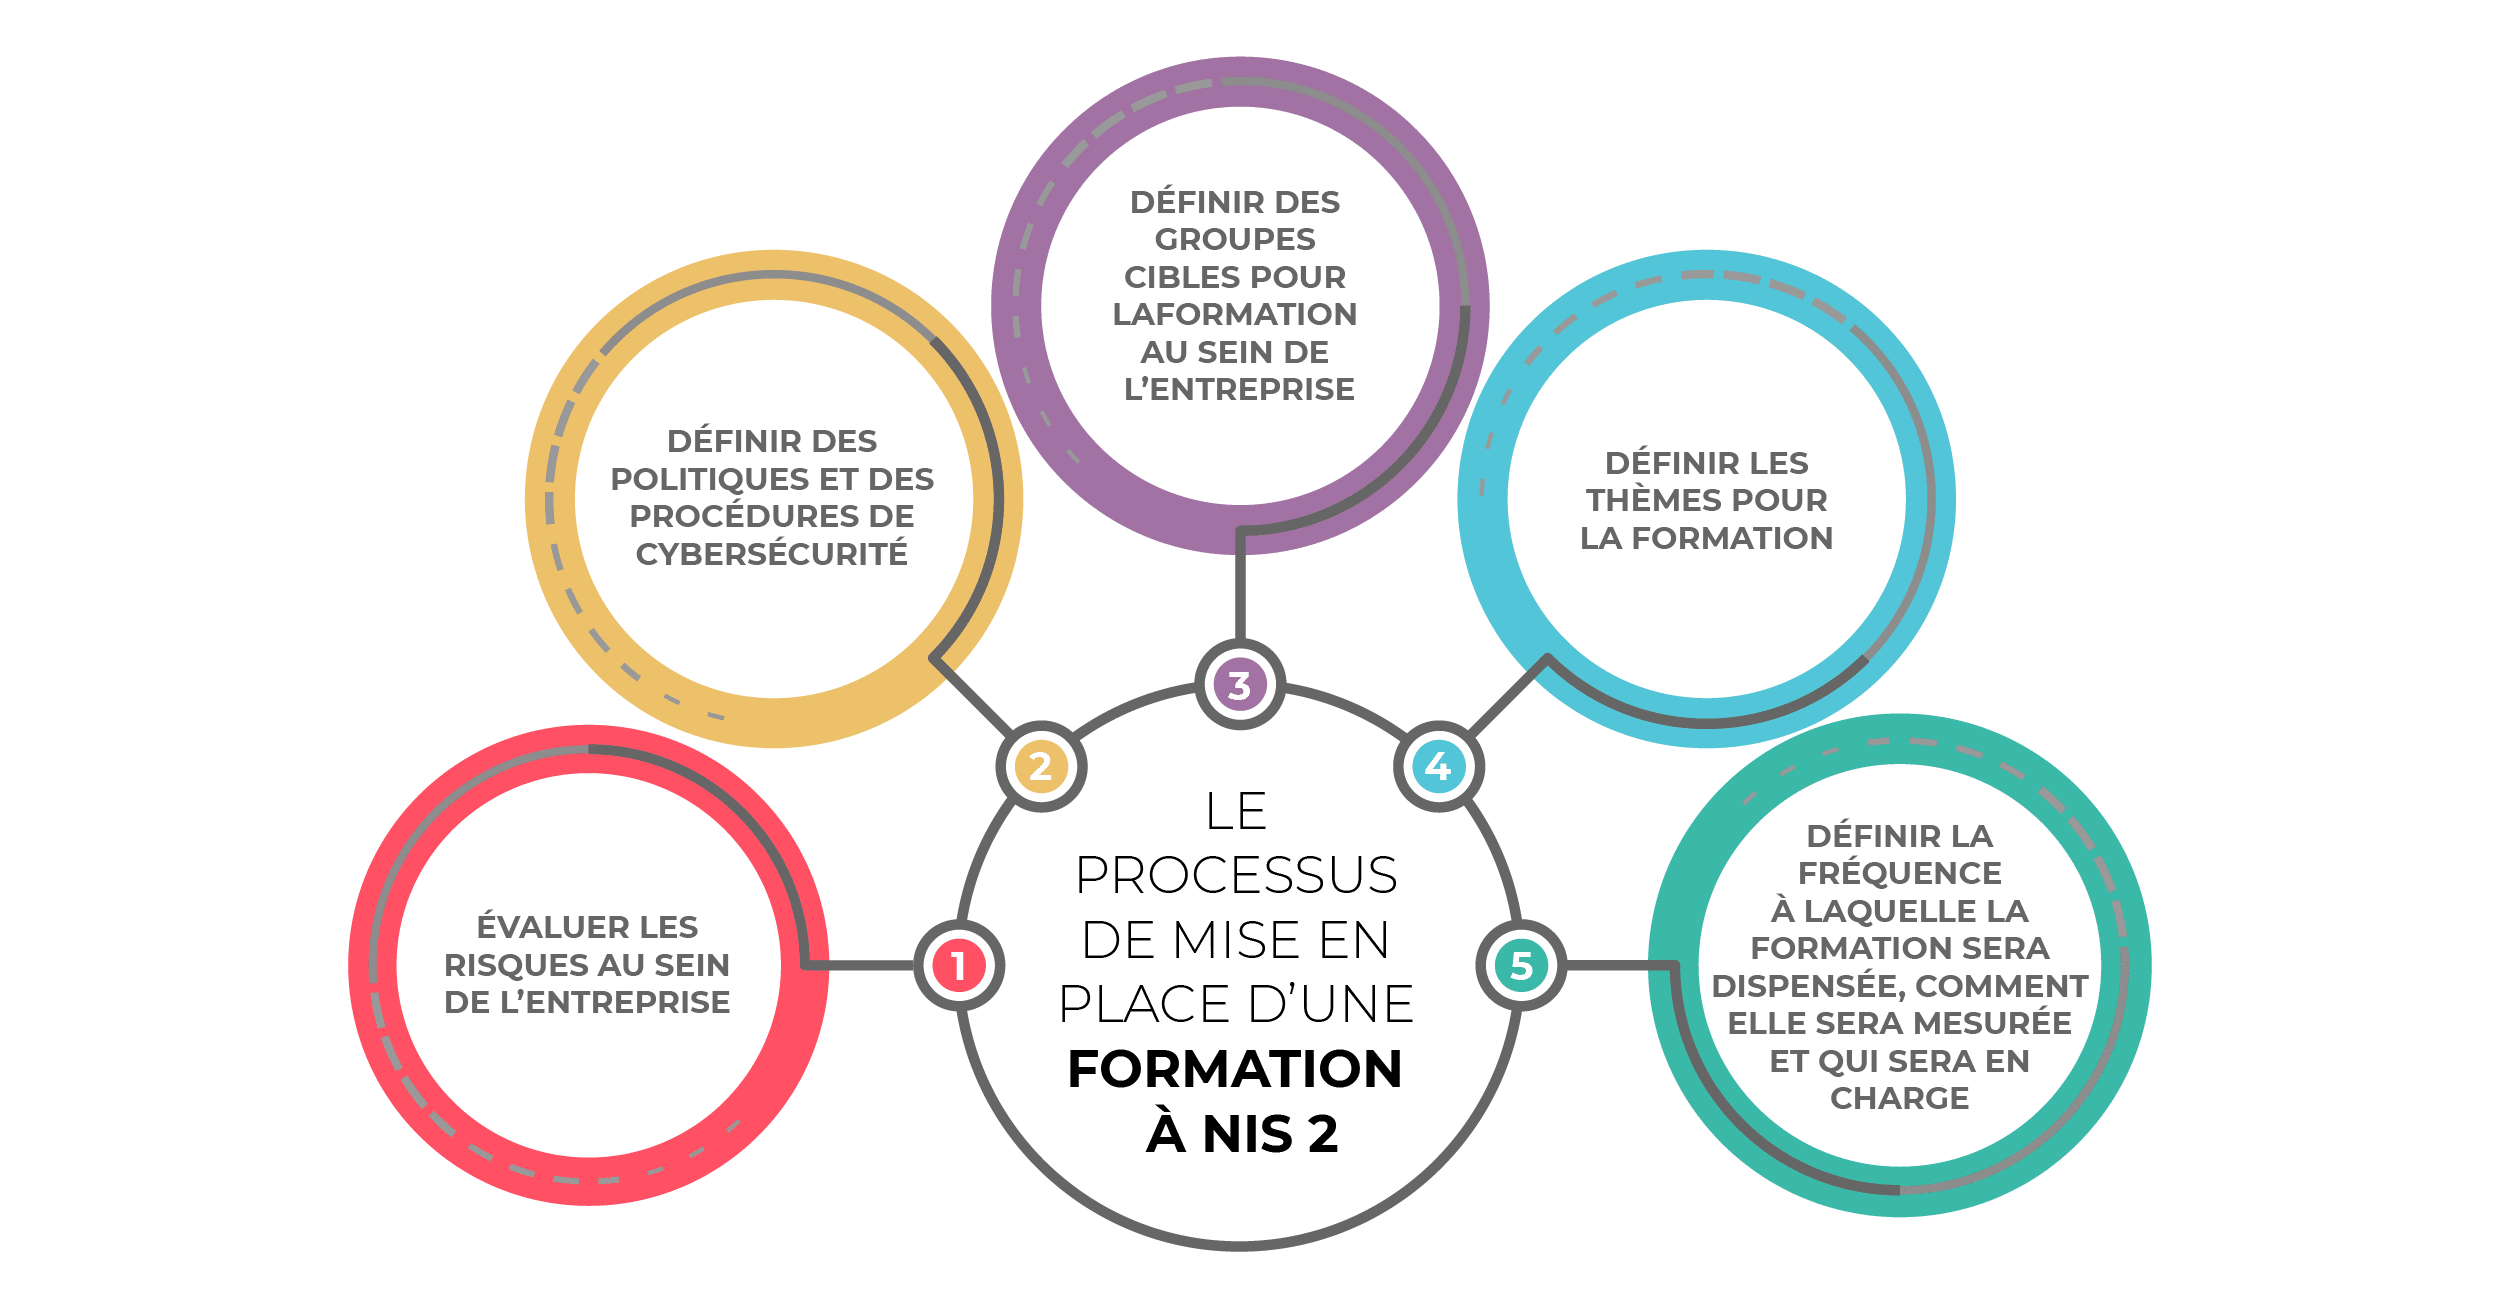 Formation et sensibilisation à NIS 2 : comment s’y prendre ?